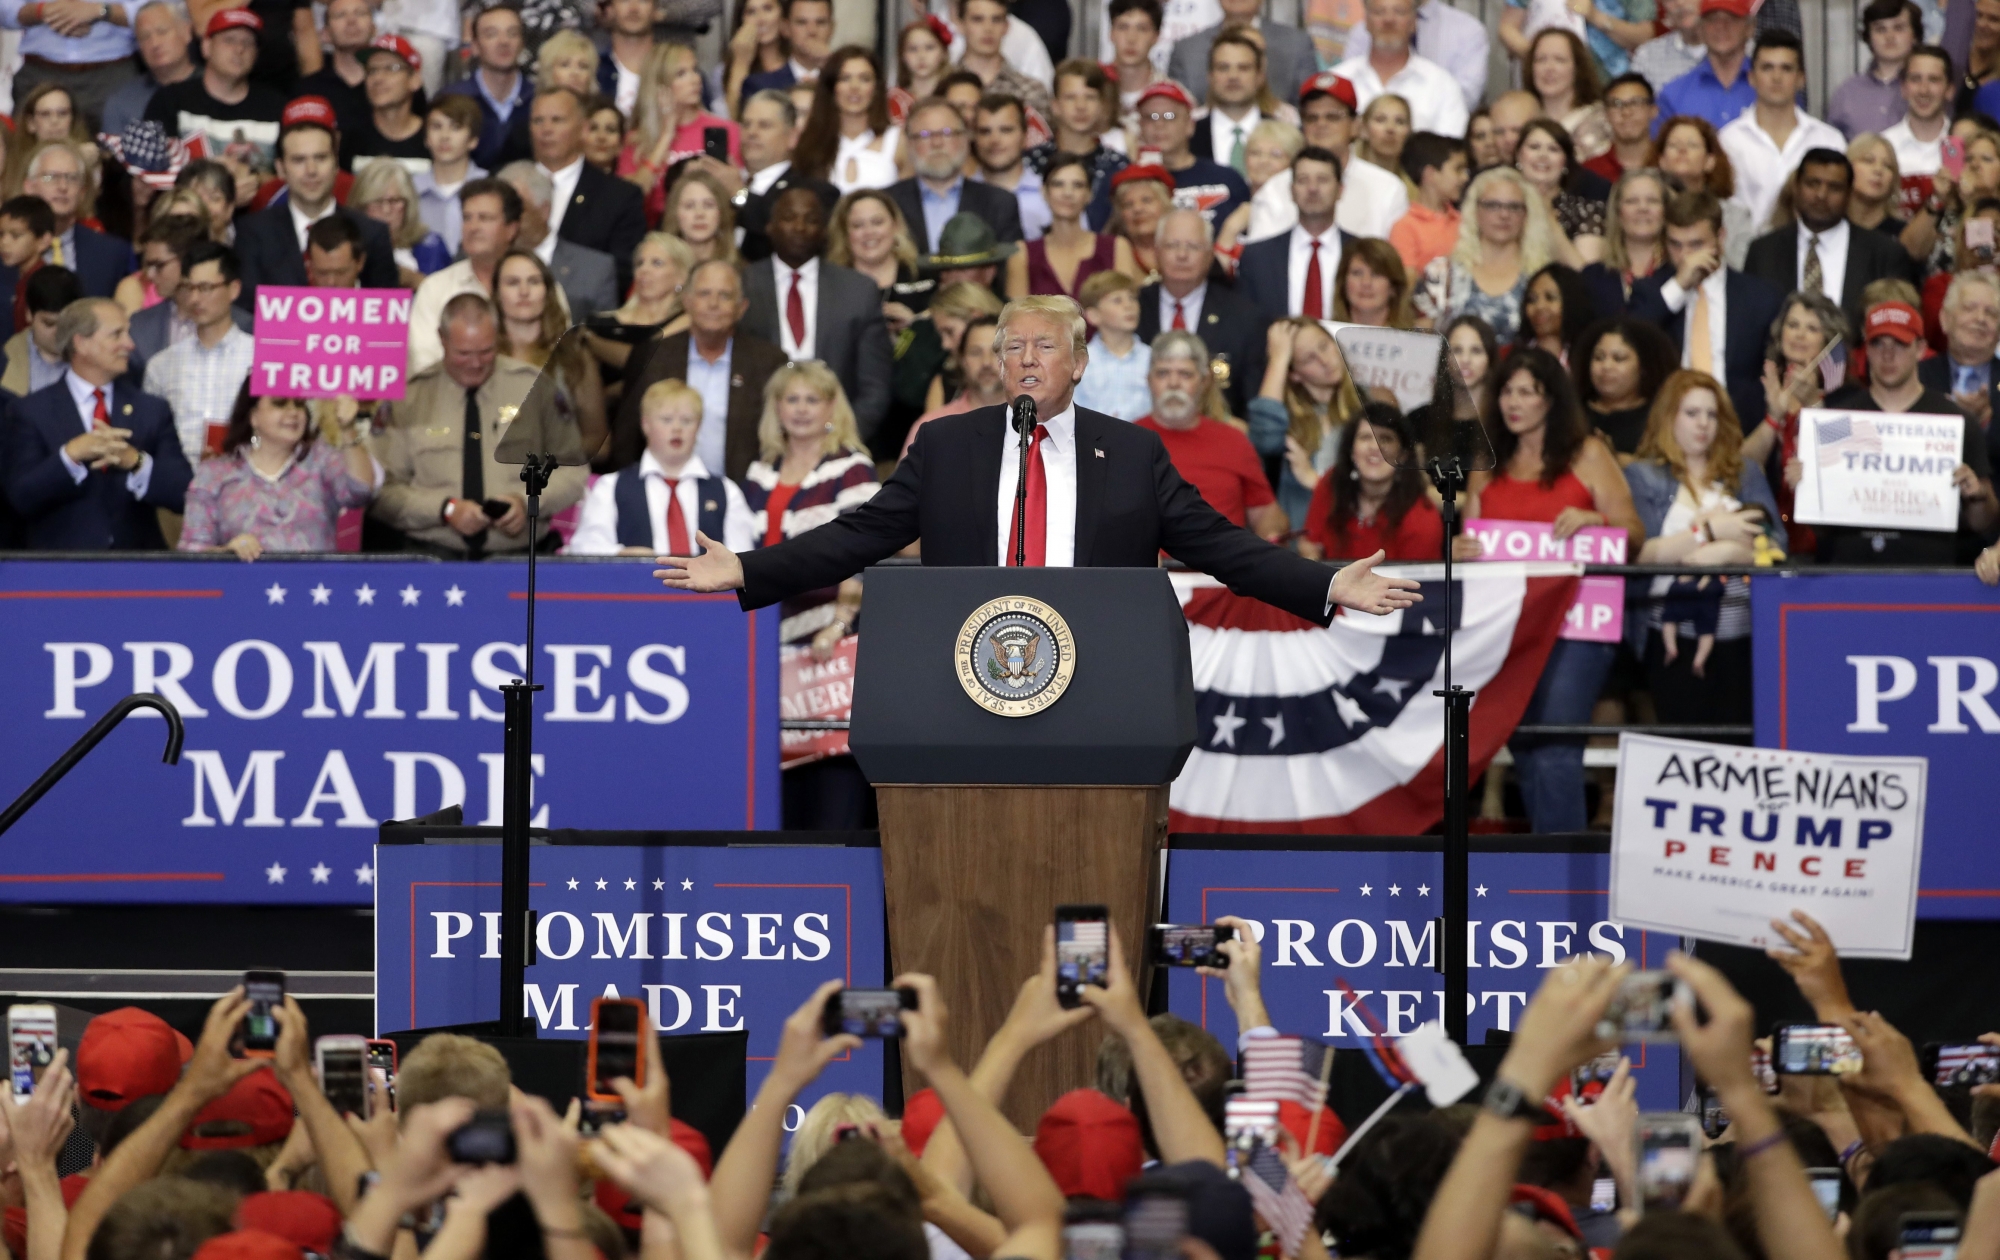 "Promesses tenues", proclame une banderole lors d'un meeting de Donald Trump au Tennessee.